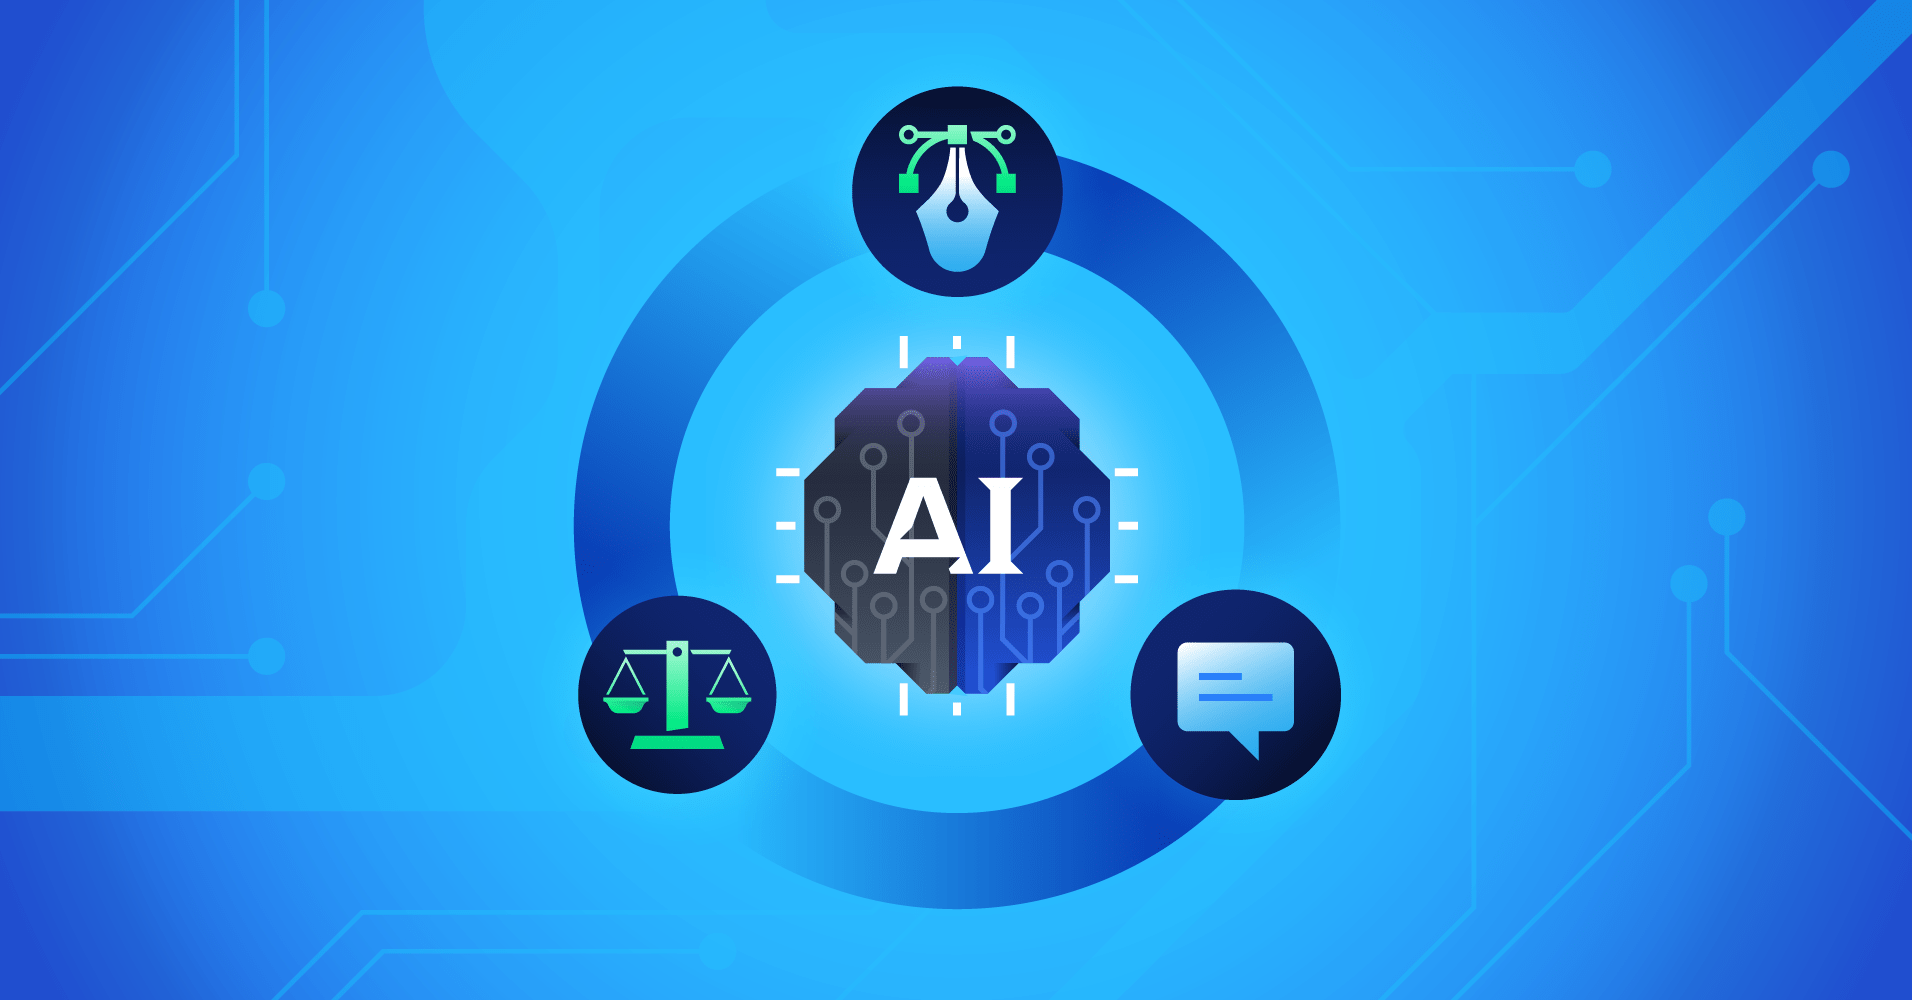 设计中的人工智能:专家讨论实际应用、道德规范和未来趋势